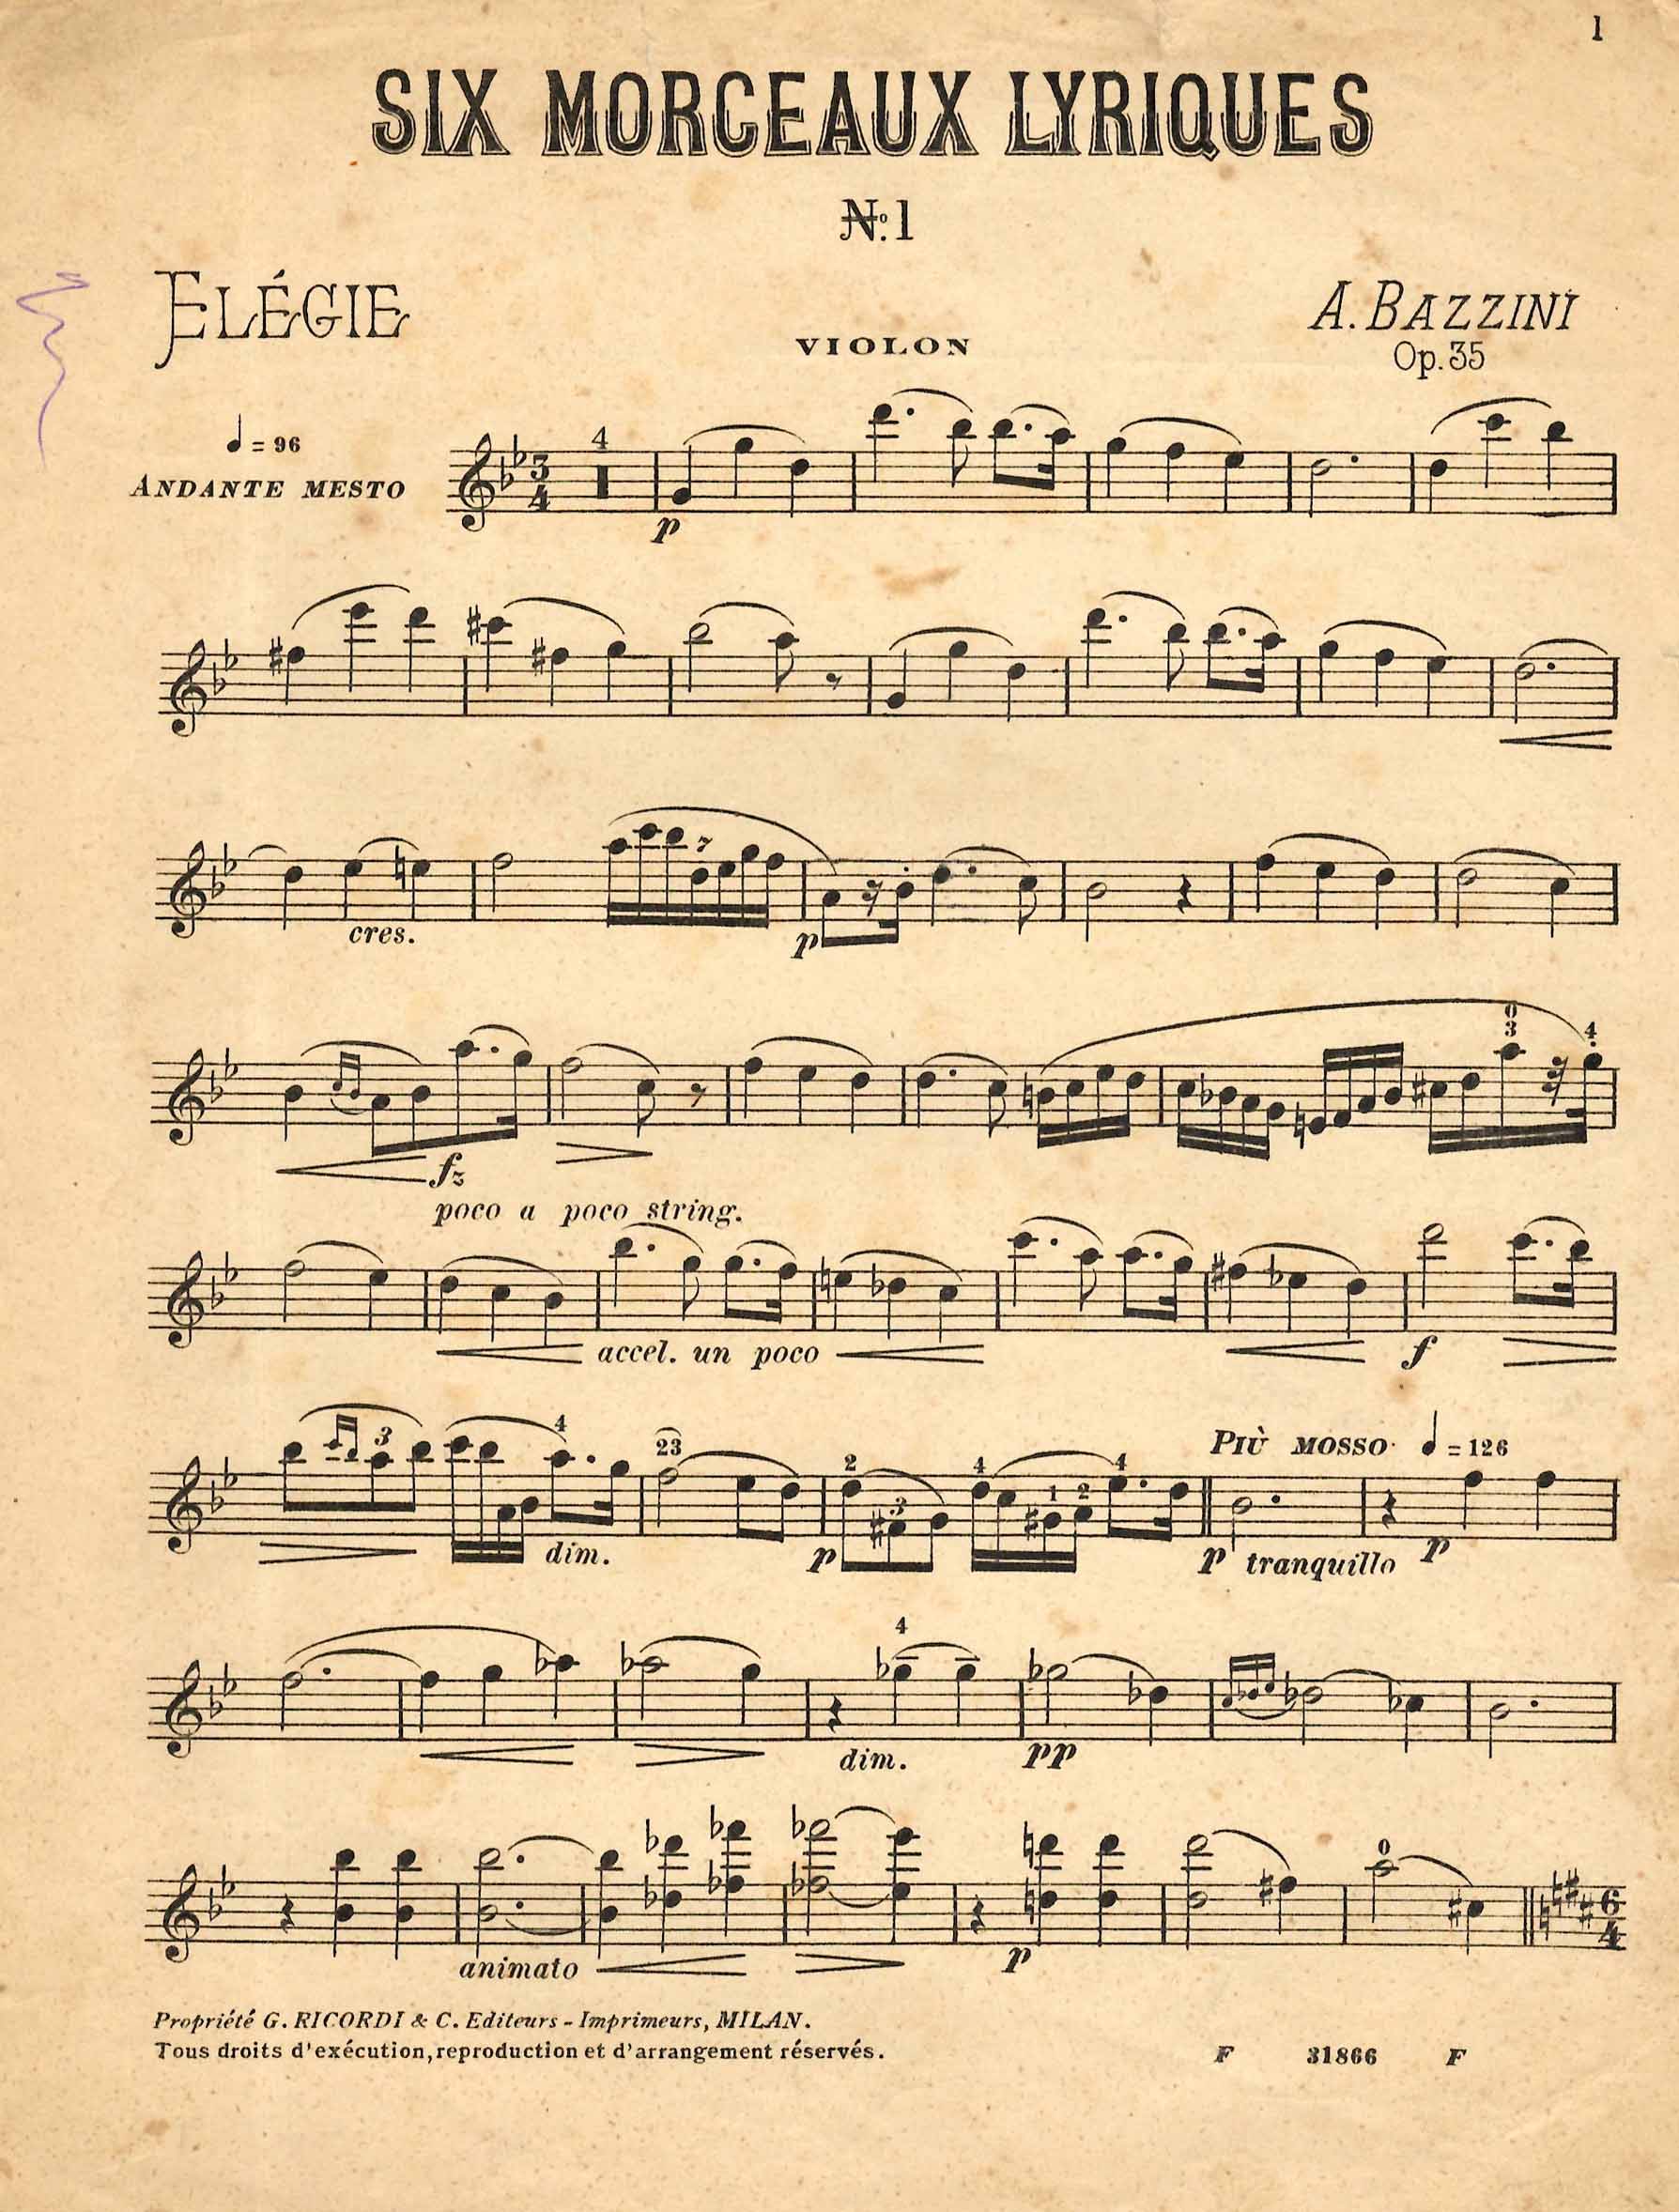 Six morceaux lyriques, n. 1, Elegie, op. 35.